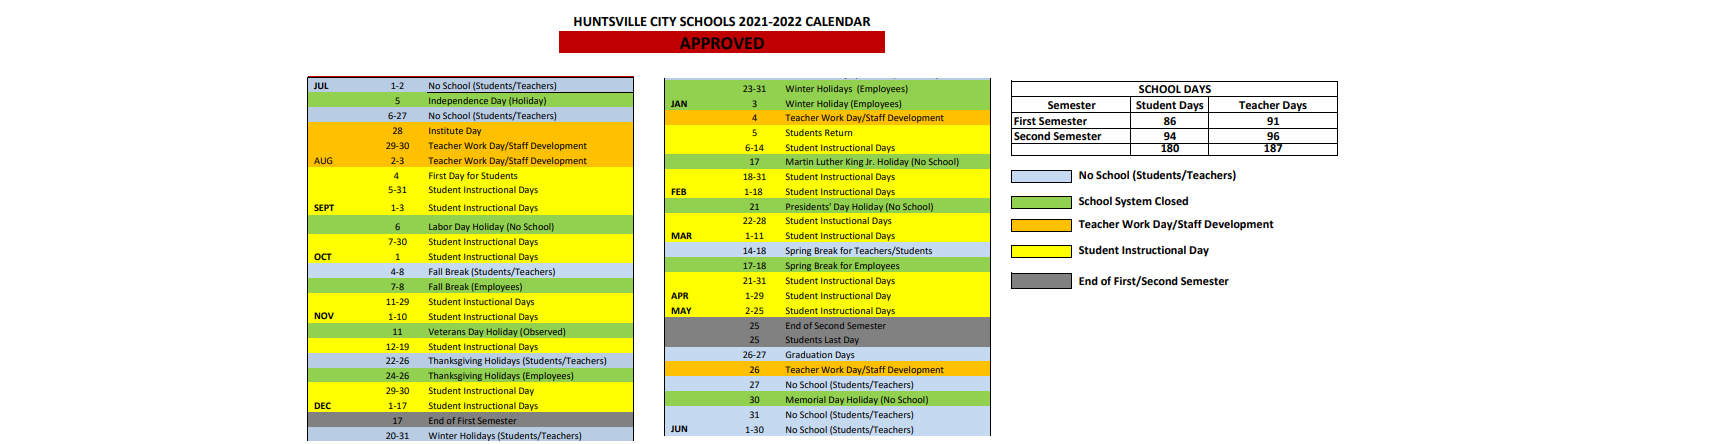 District School Academic Calendar Key for Jones Valley Elementary School